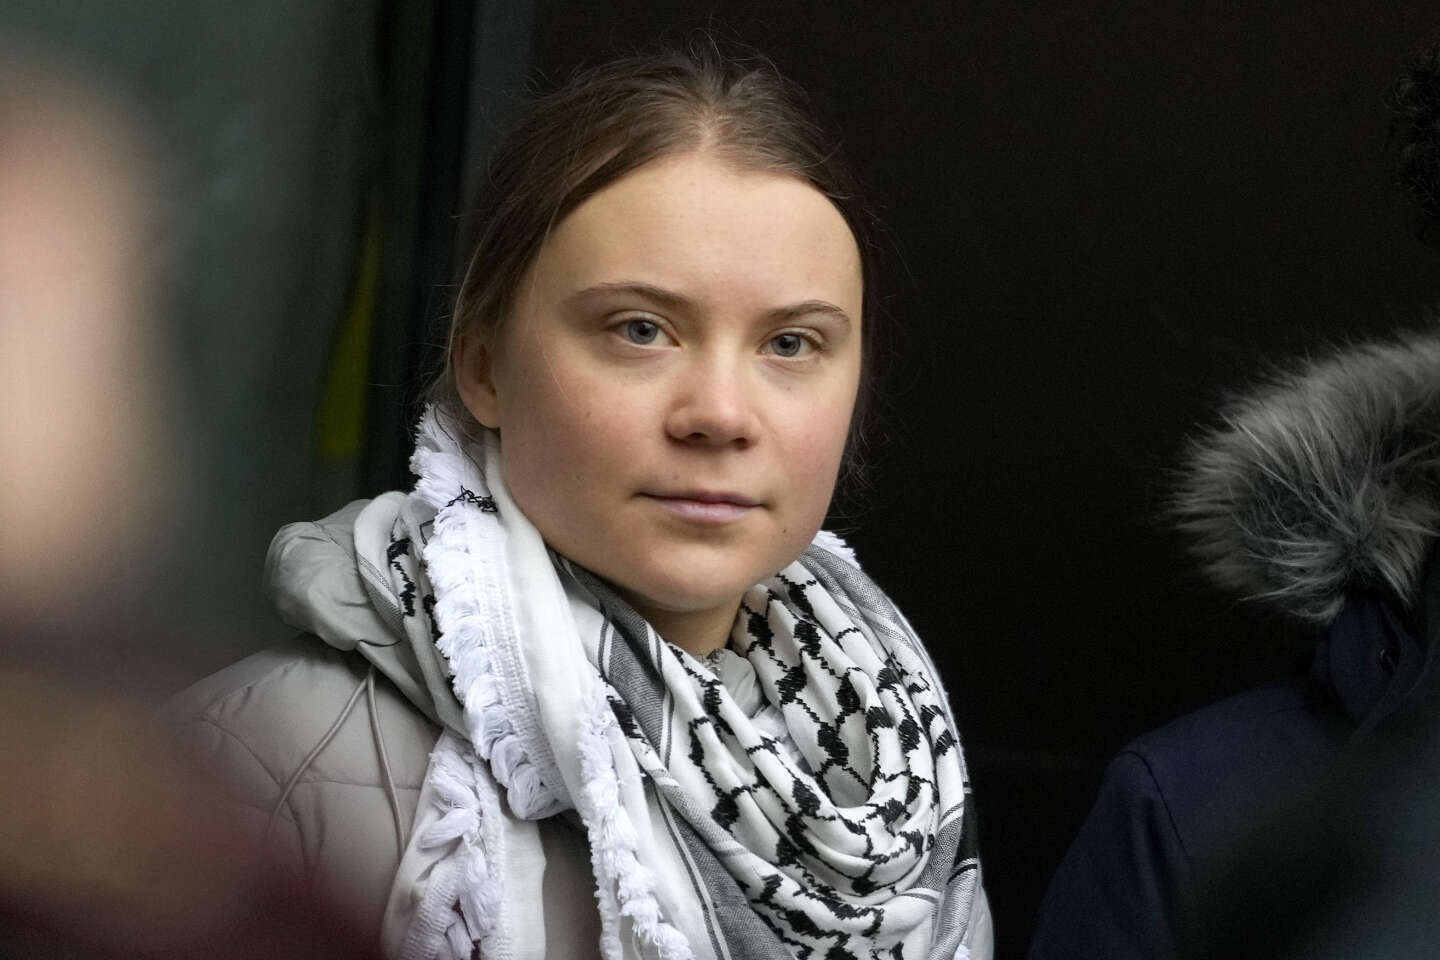 La militante écologiste Greta Thunberg attendue dans le Tarn à La Cabanade des opposants à l’A69